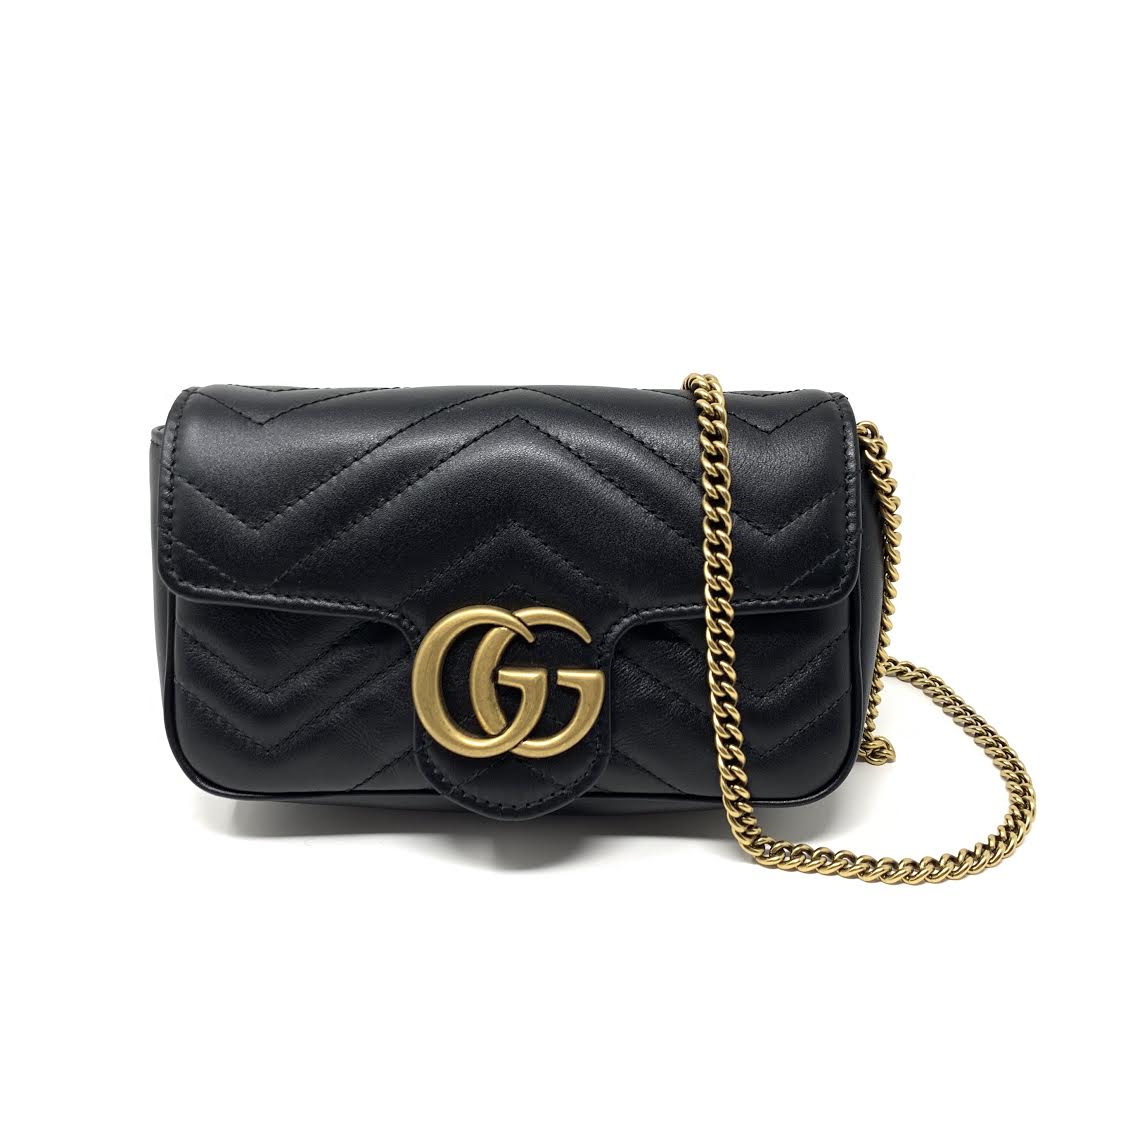 GG Marmont matelassé leather super mini bag Black